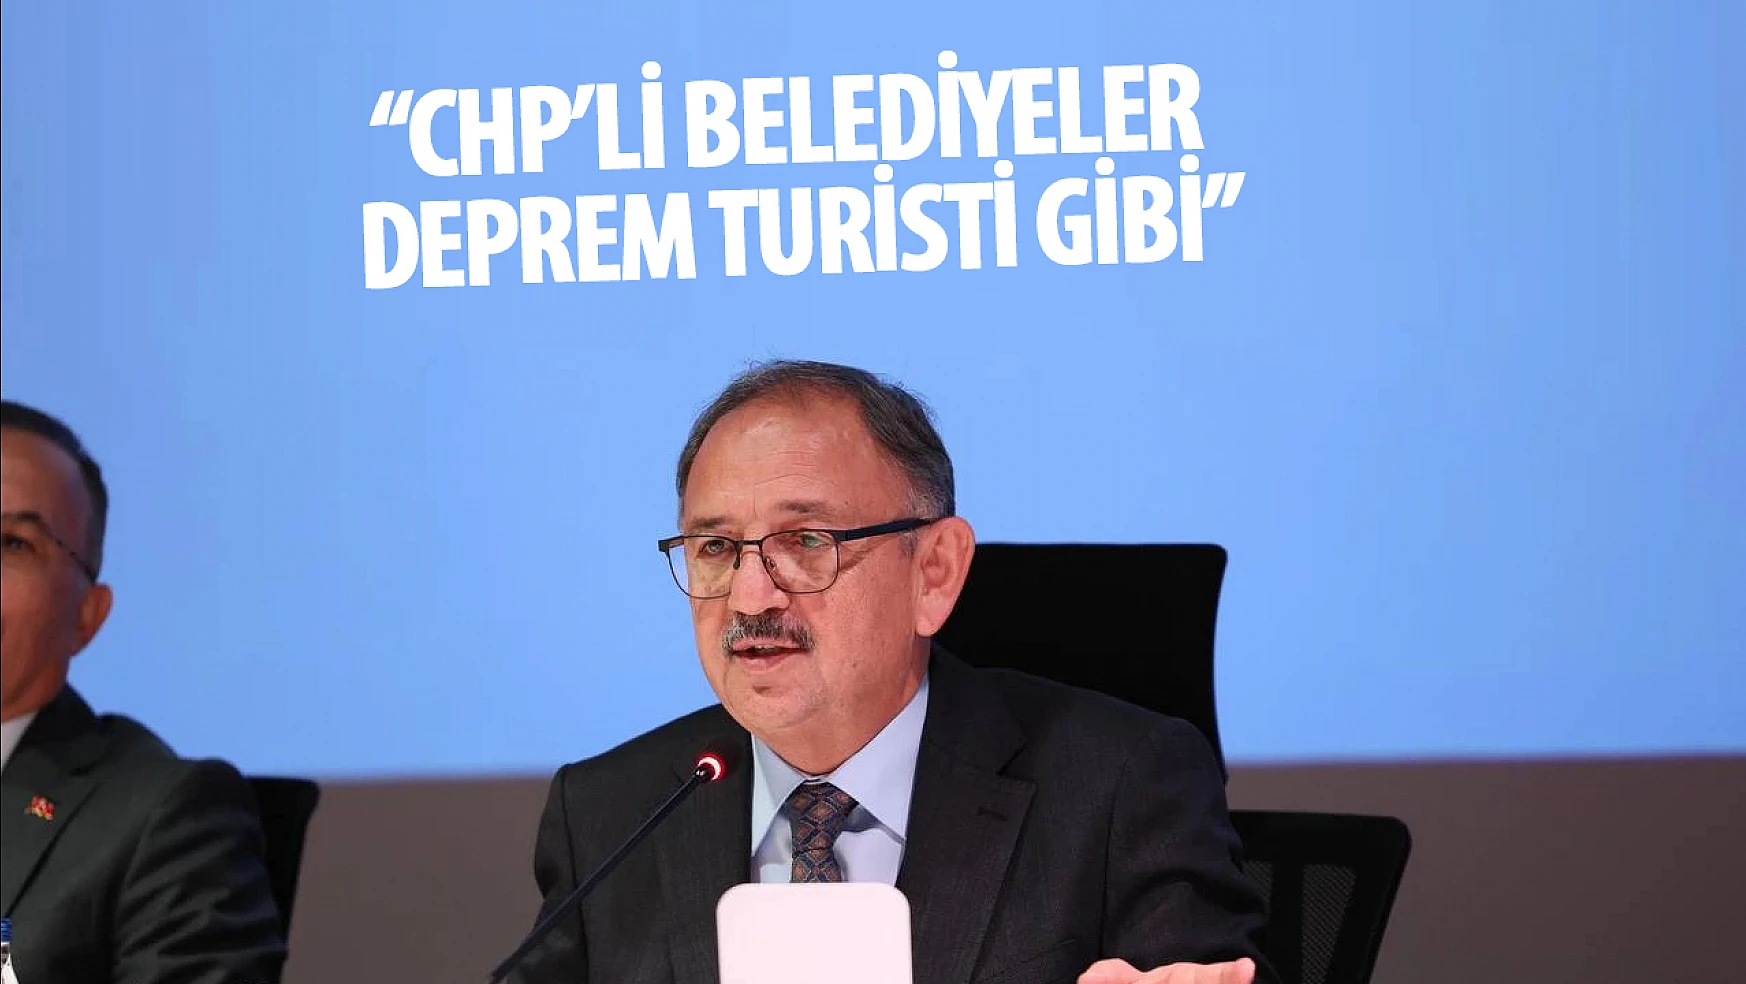 Özhaseki, CHP belediye başkanlarını eleştirdi: 'deprem turisti gibilerdi'